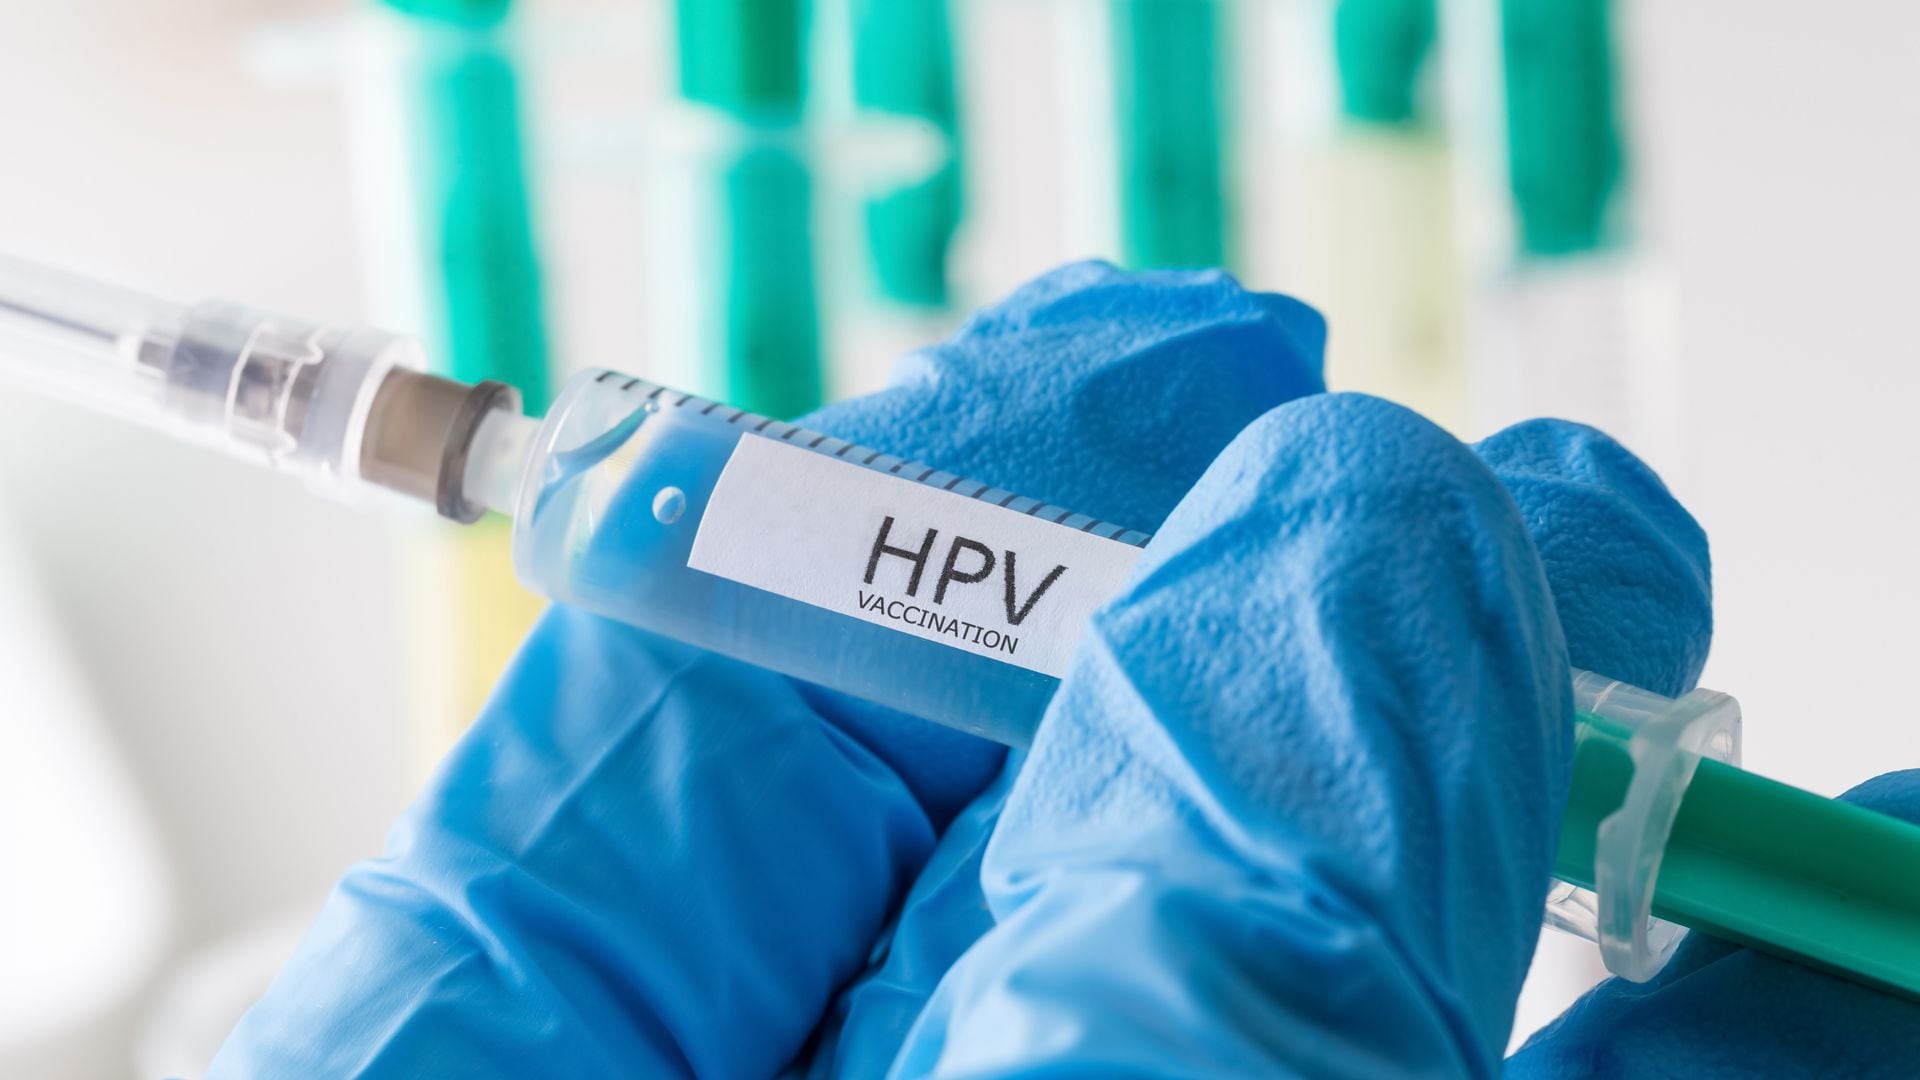 Las dosis protegen contra los virus del papiloma humano (VPH) de alto riesgo de causar cáncer
(Getty)